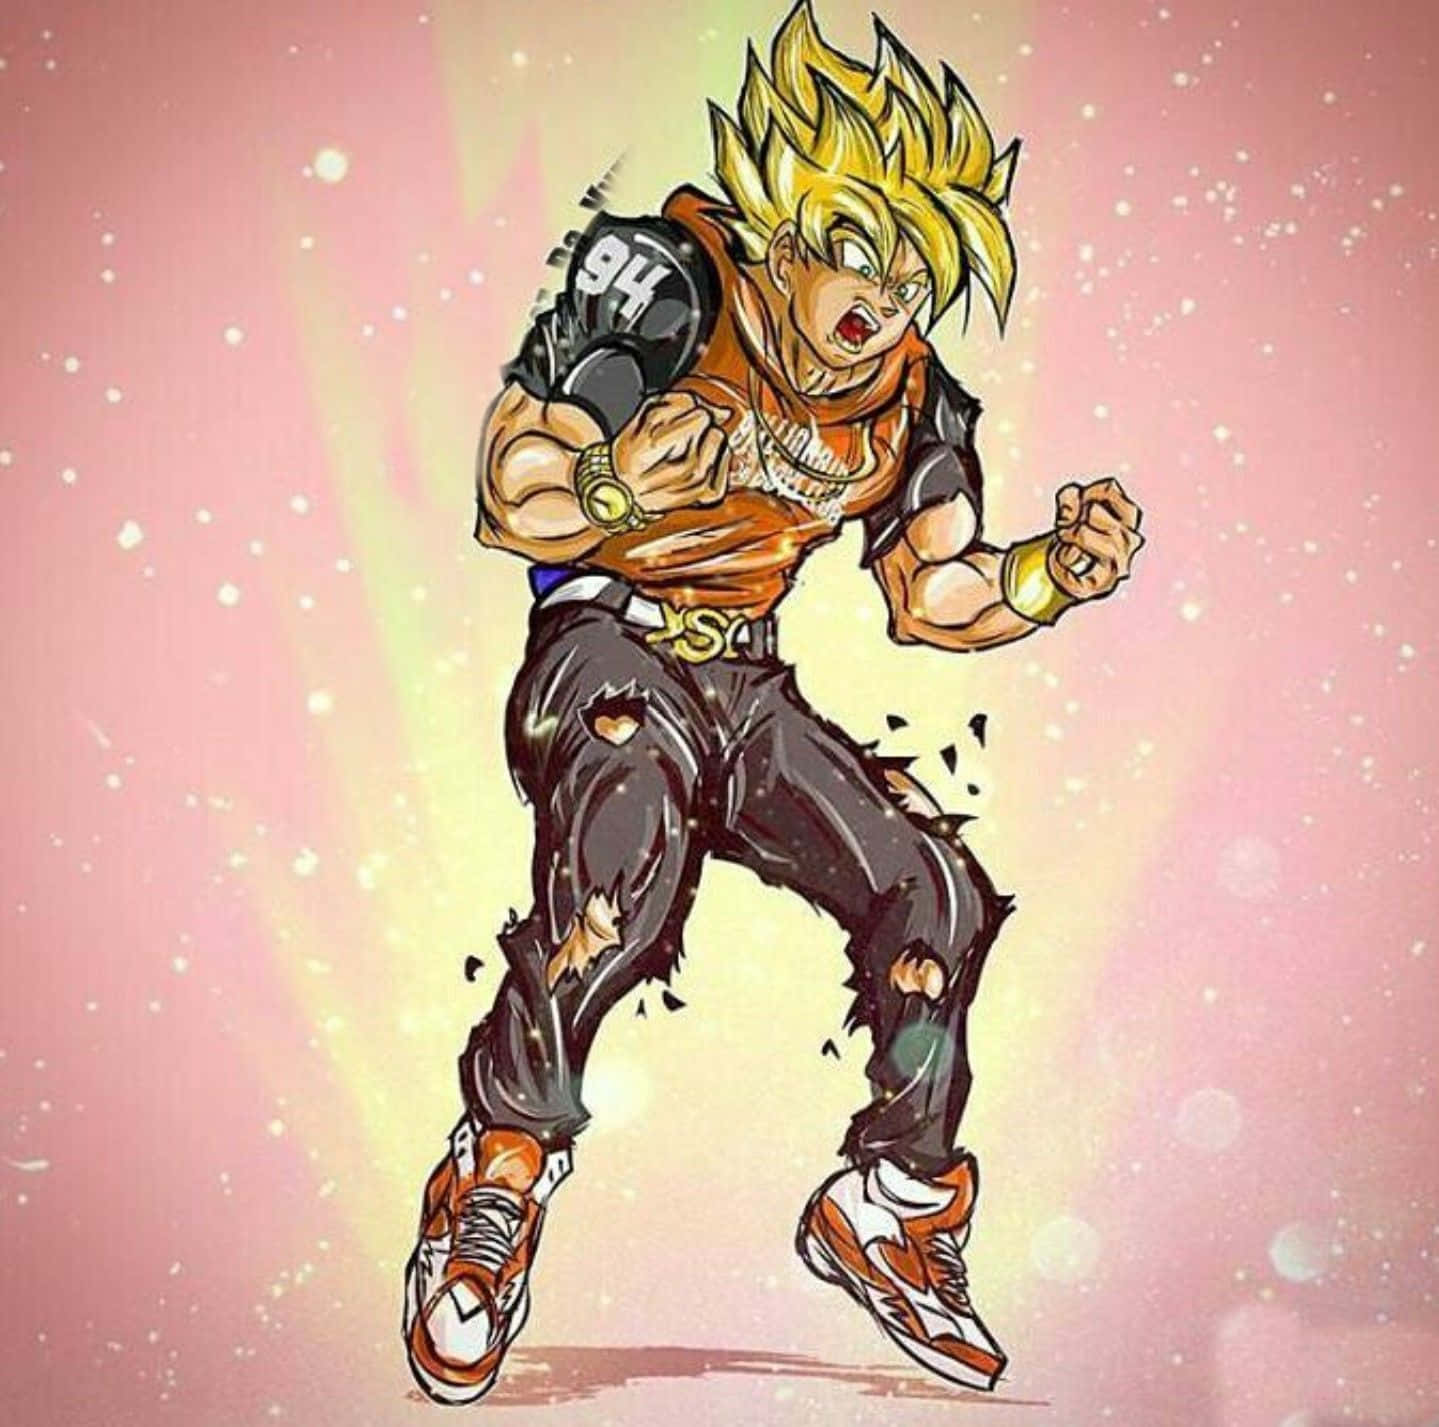 Goku Supreme viser vejen med utrolig styrke, magt og beslutsomhed. Wallpaper